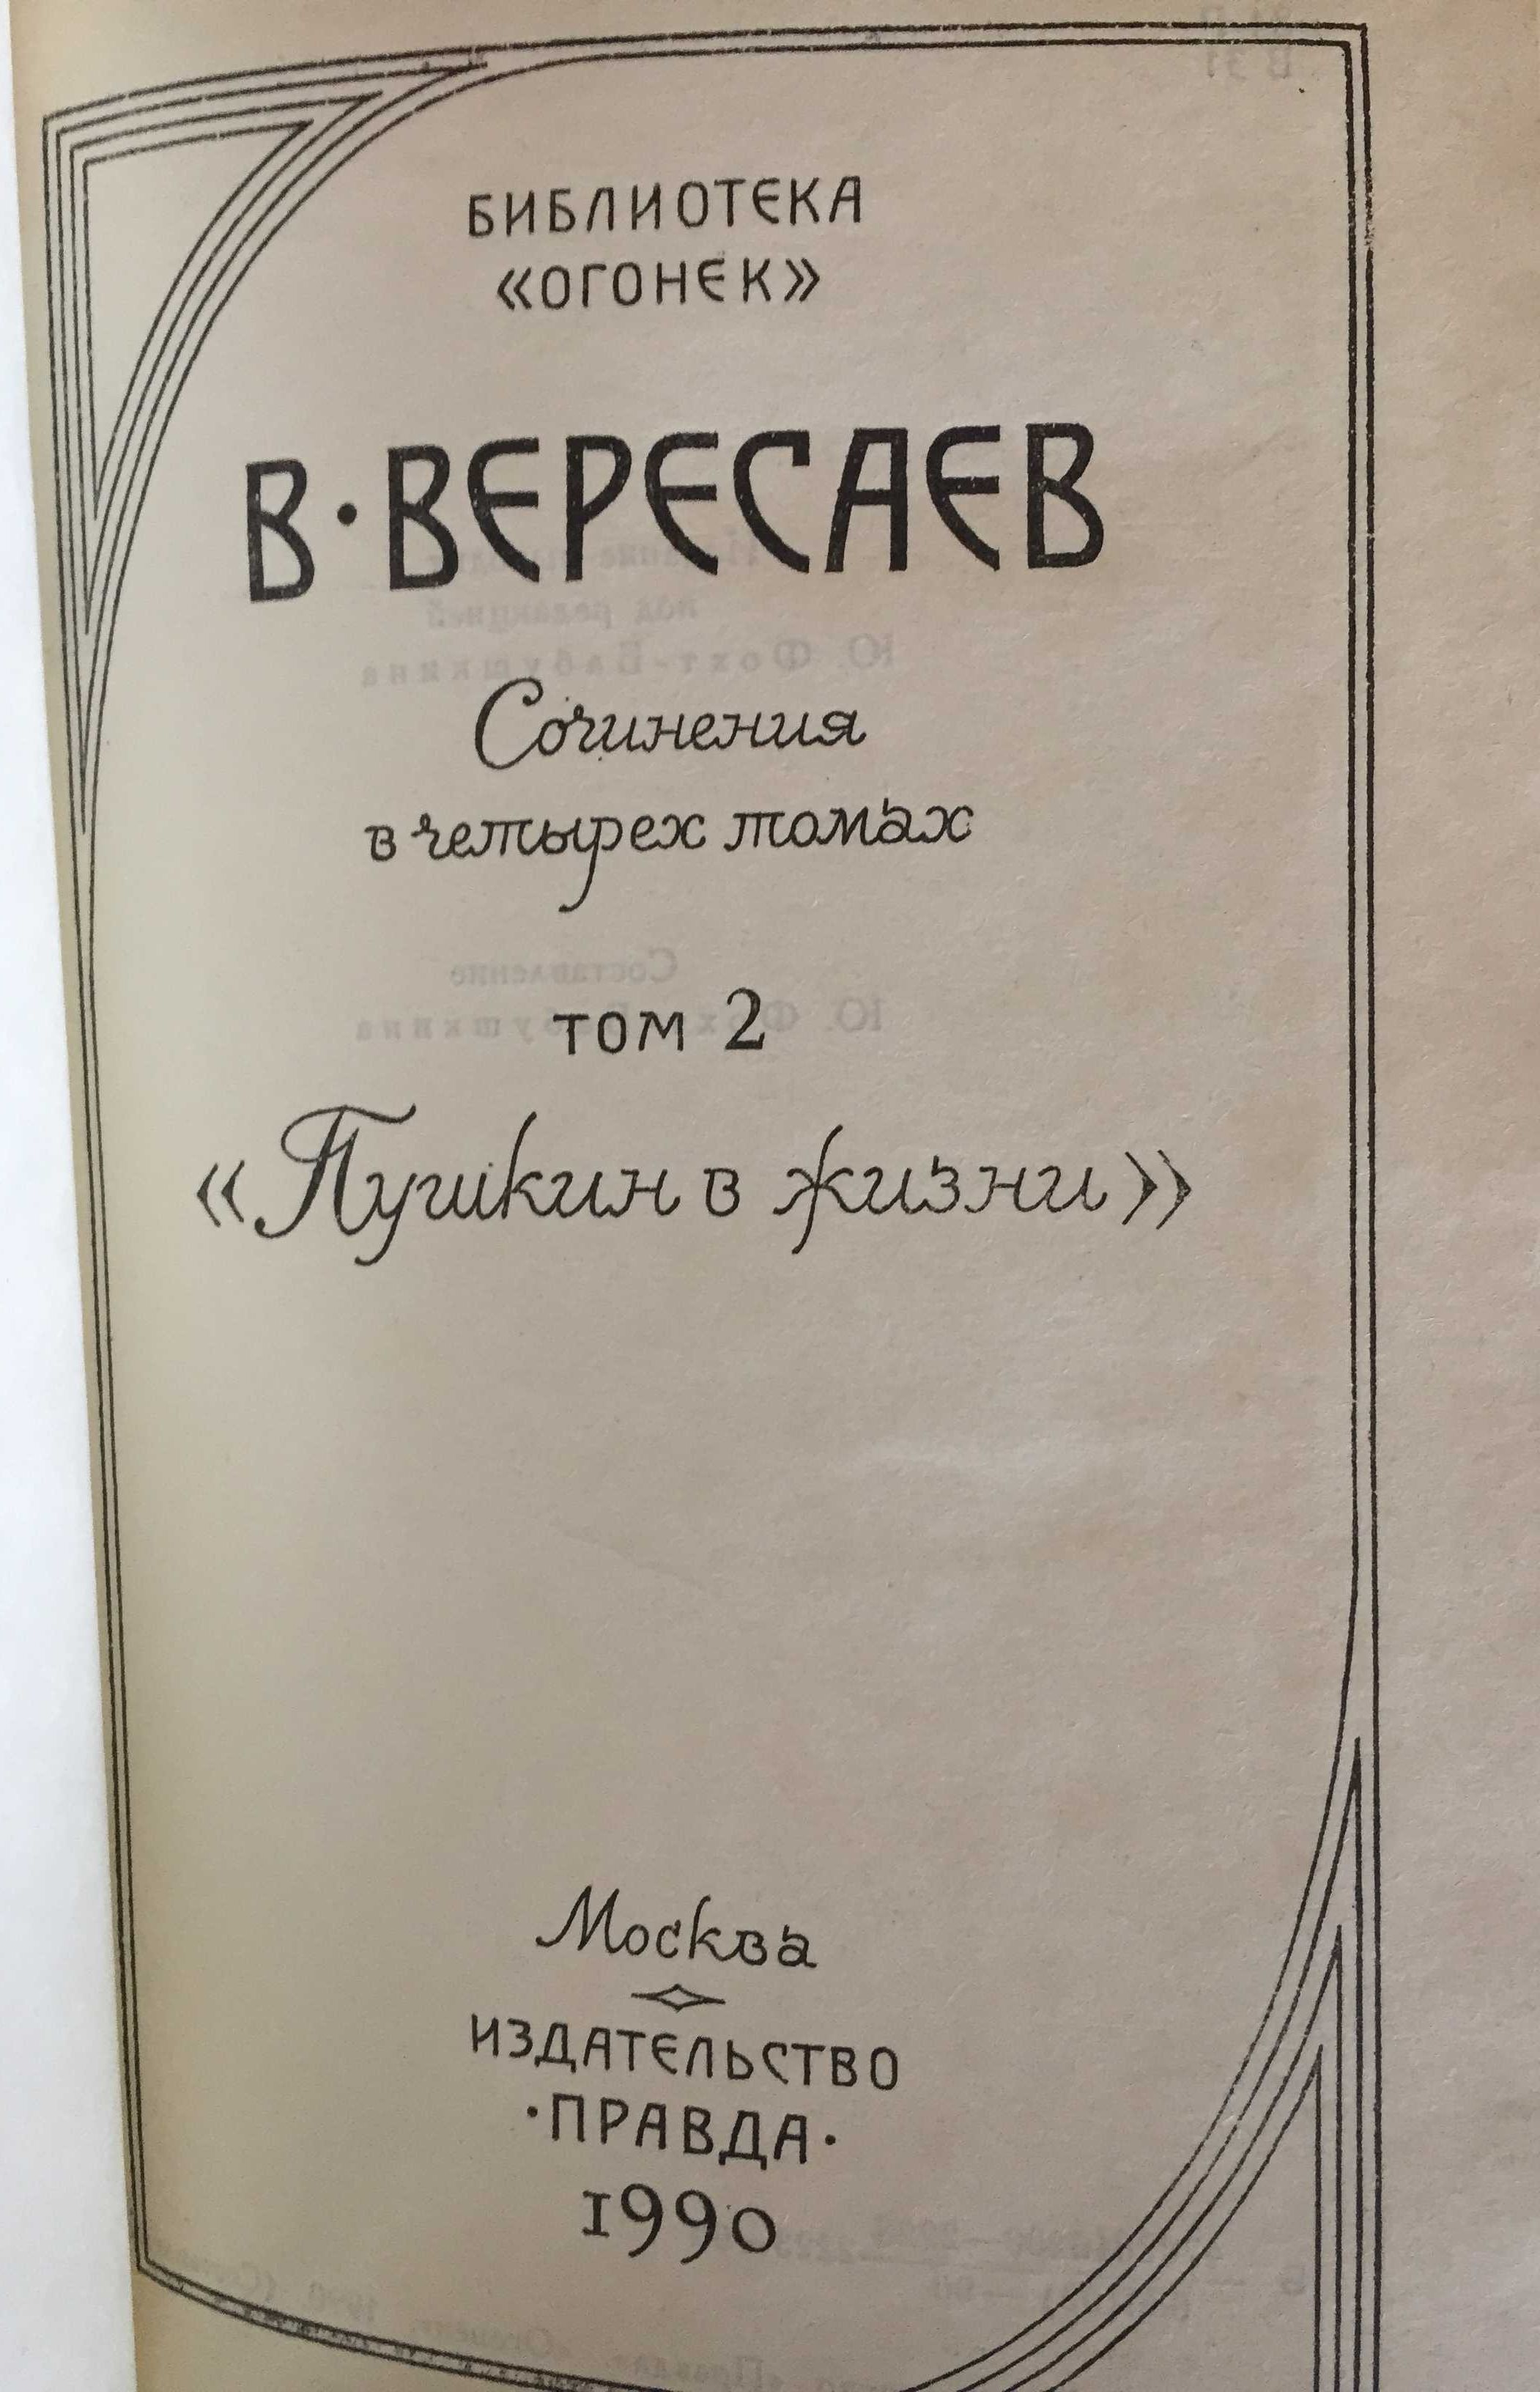 Вересаєв Вікентій. Твори у 4-х томах. Книги